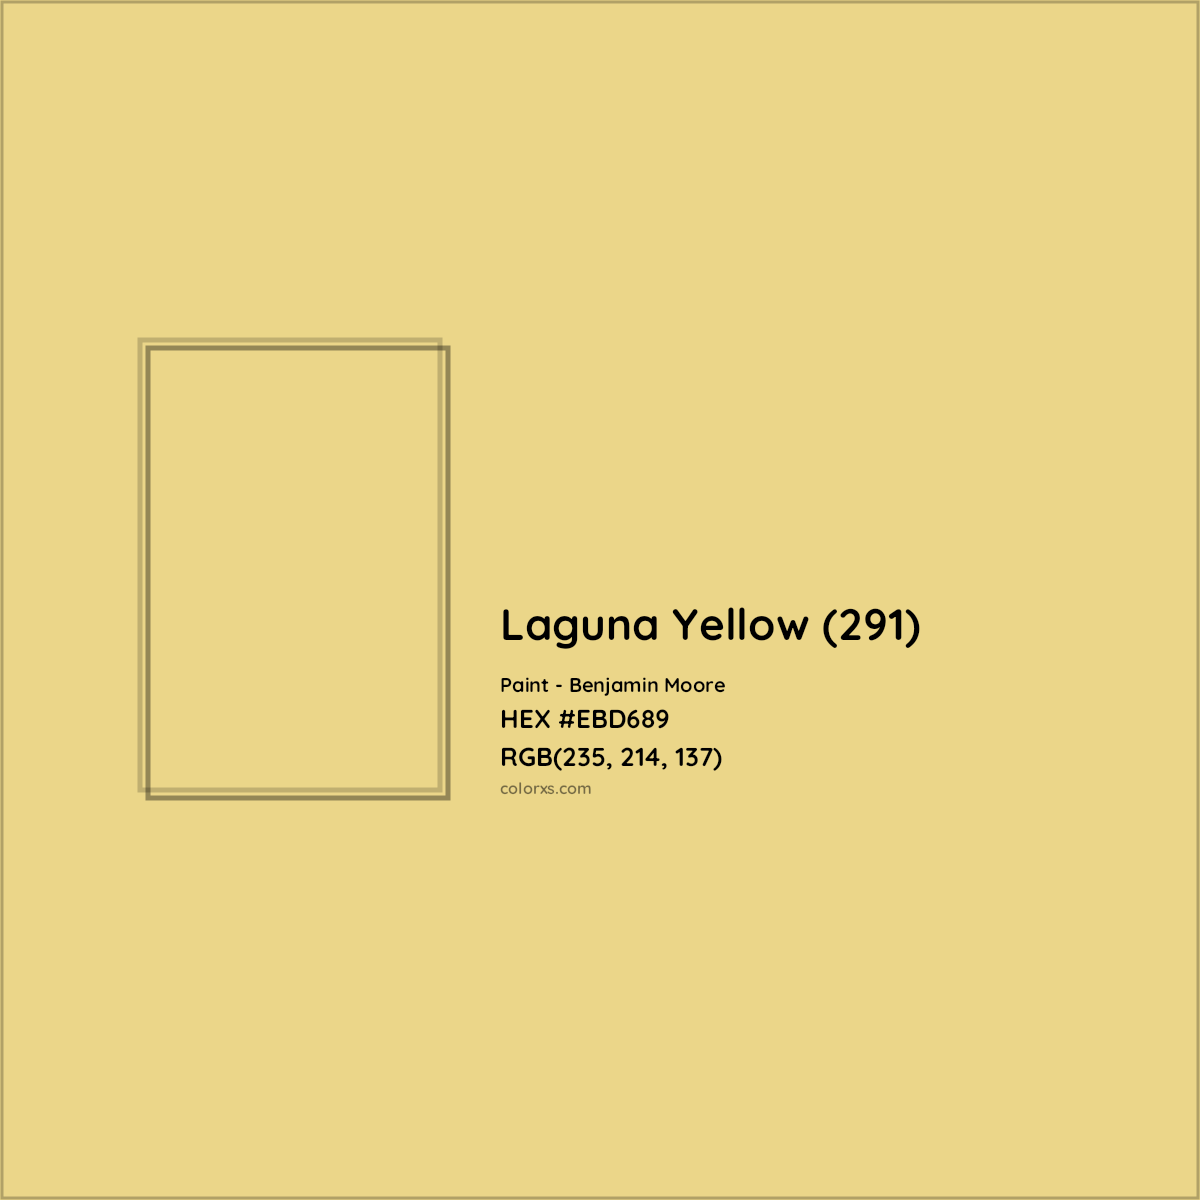 HEX #EBD689 Laguna Yellow (291) Paint Benjamin Moore - Color Code